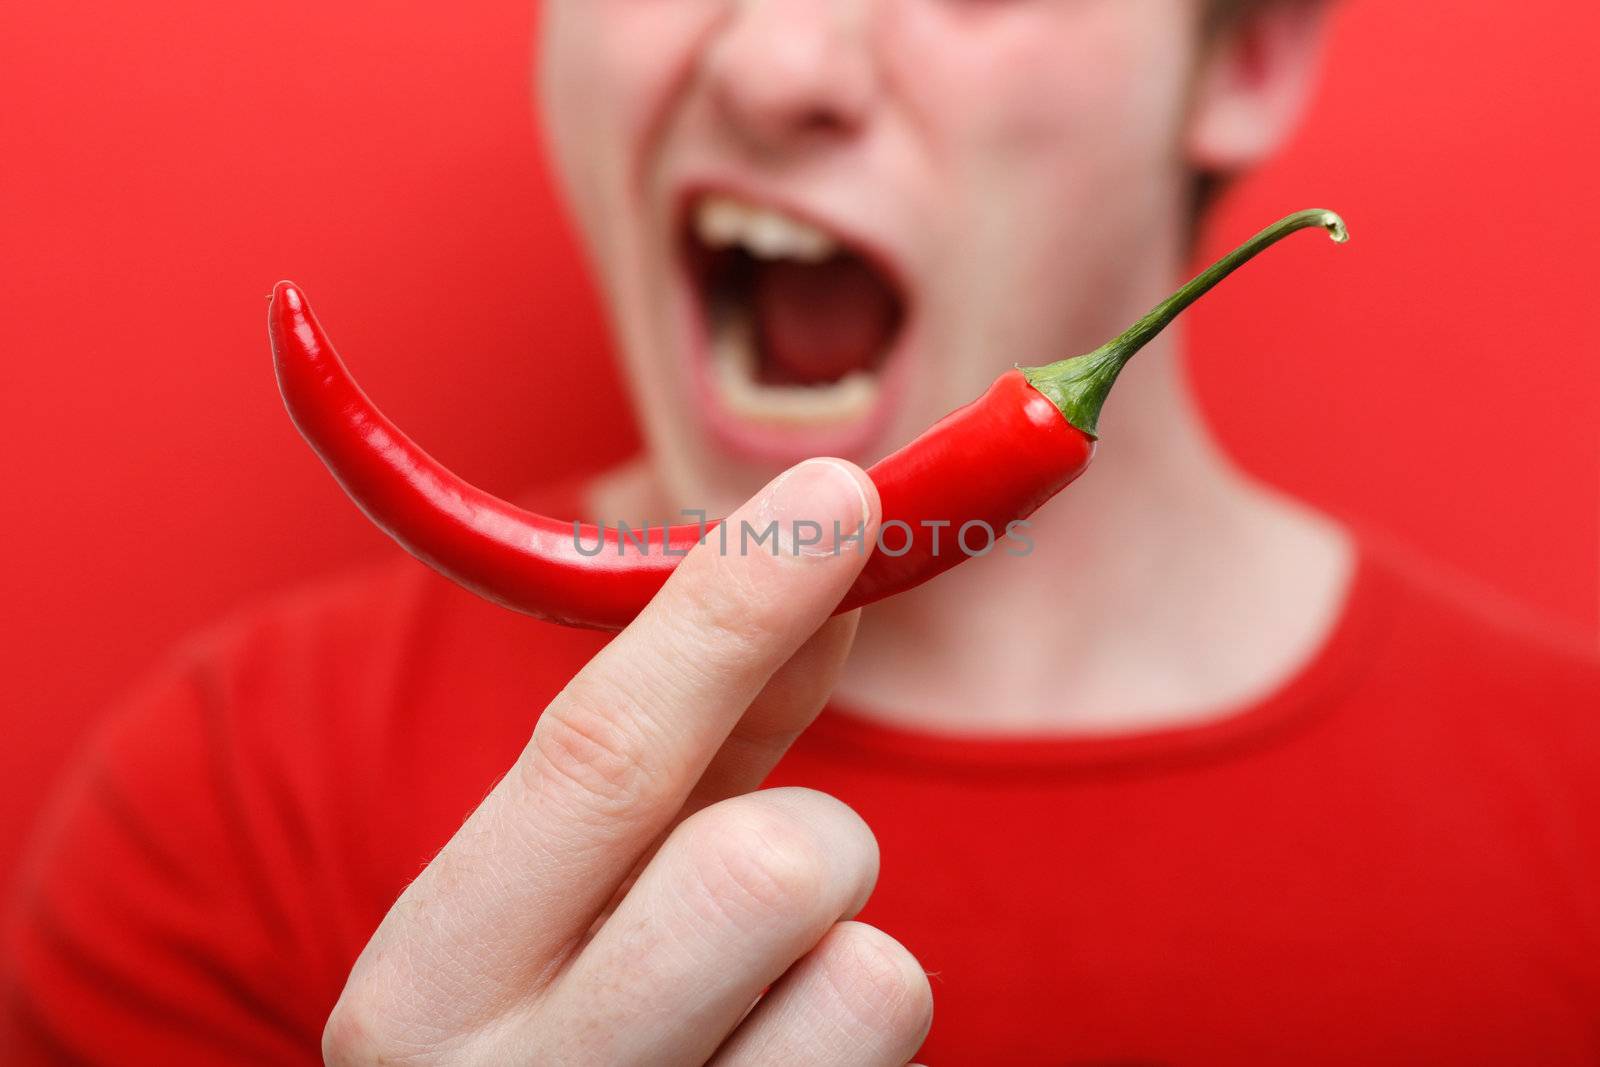 Eating chili pepper by leeser